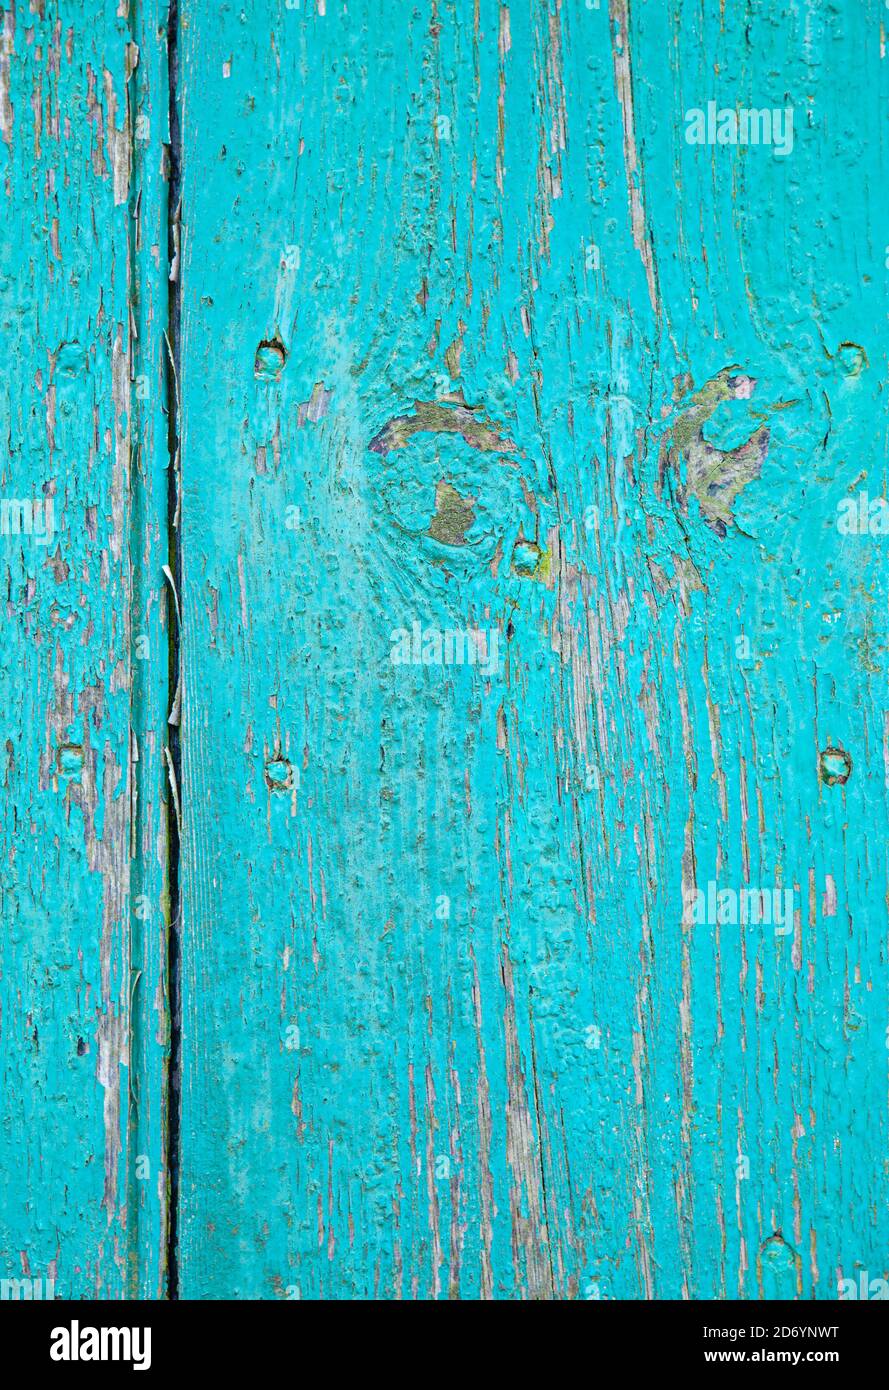 Madera envejecida pintada en color turquesa. Foto de stock